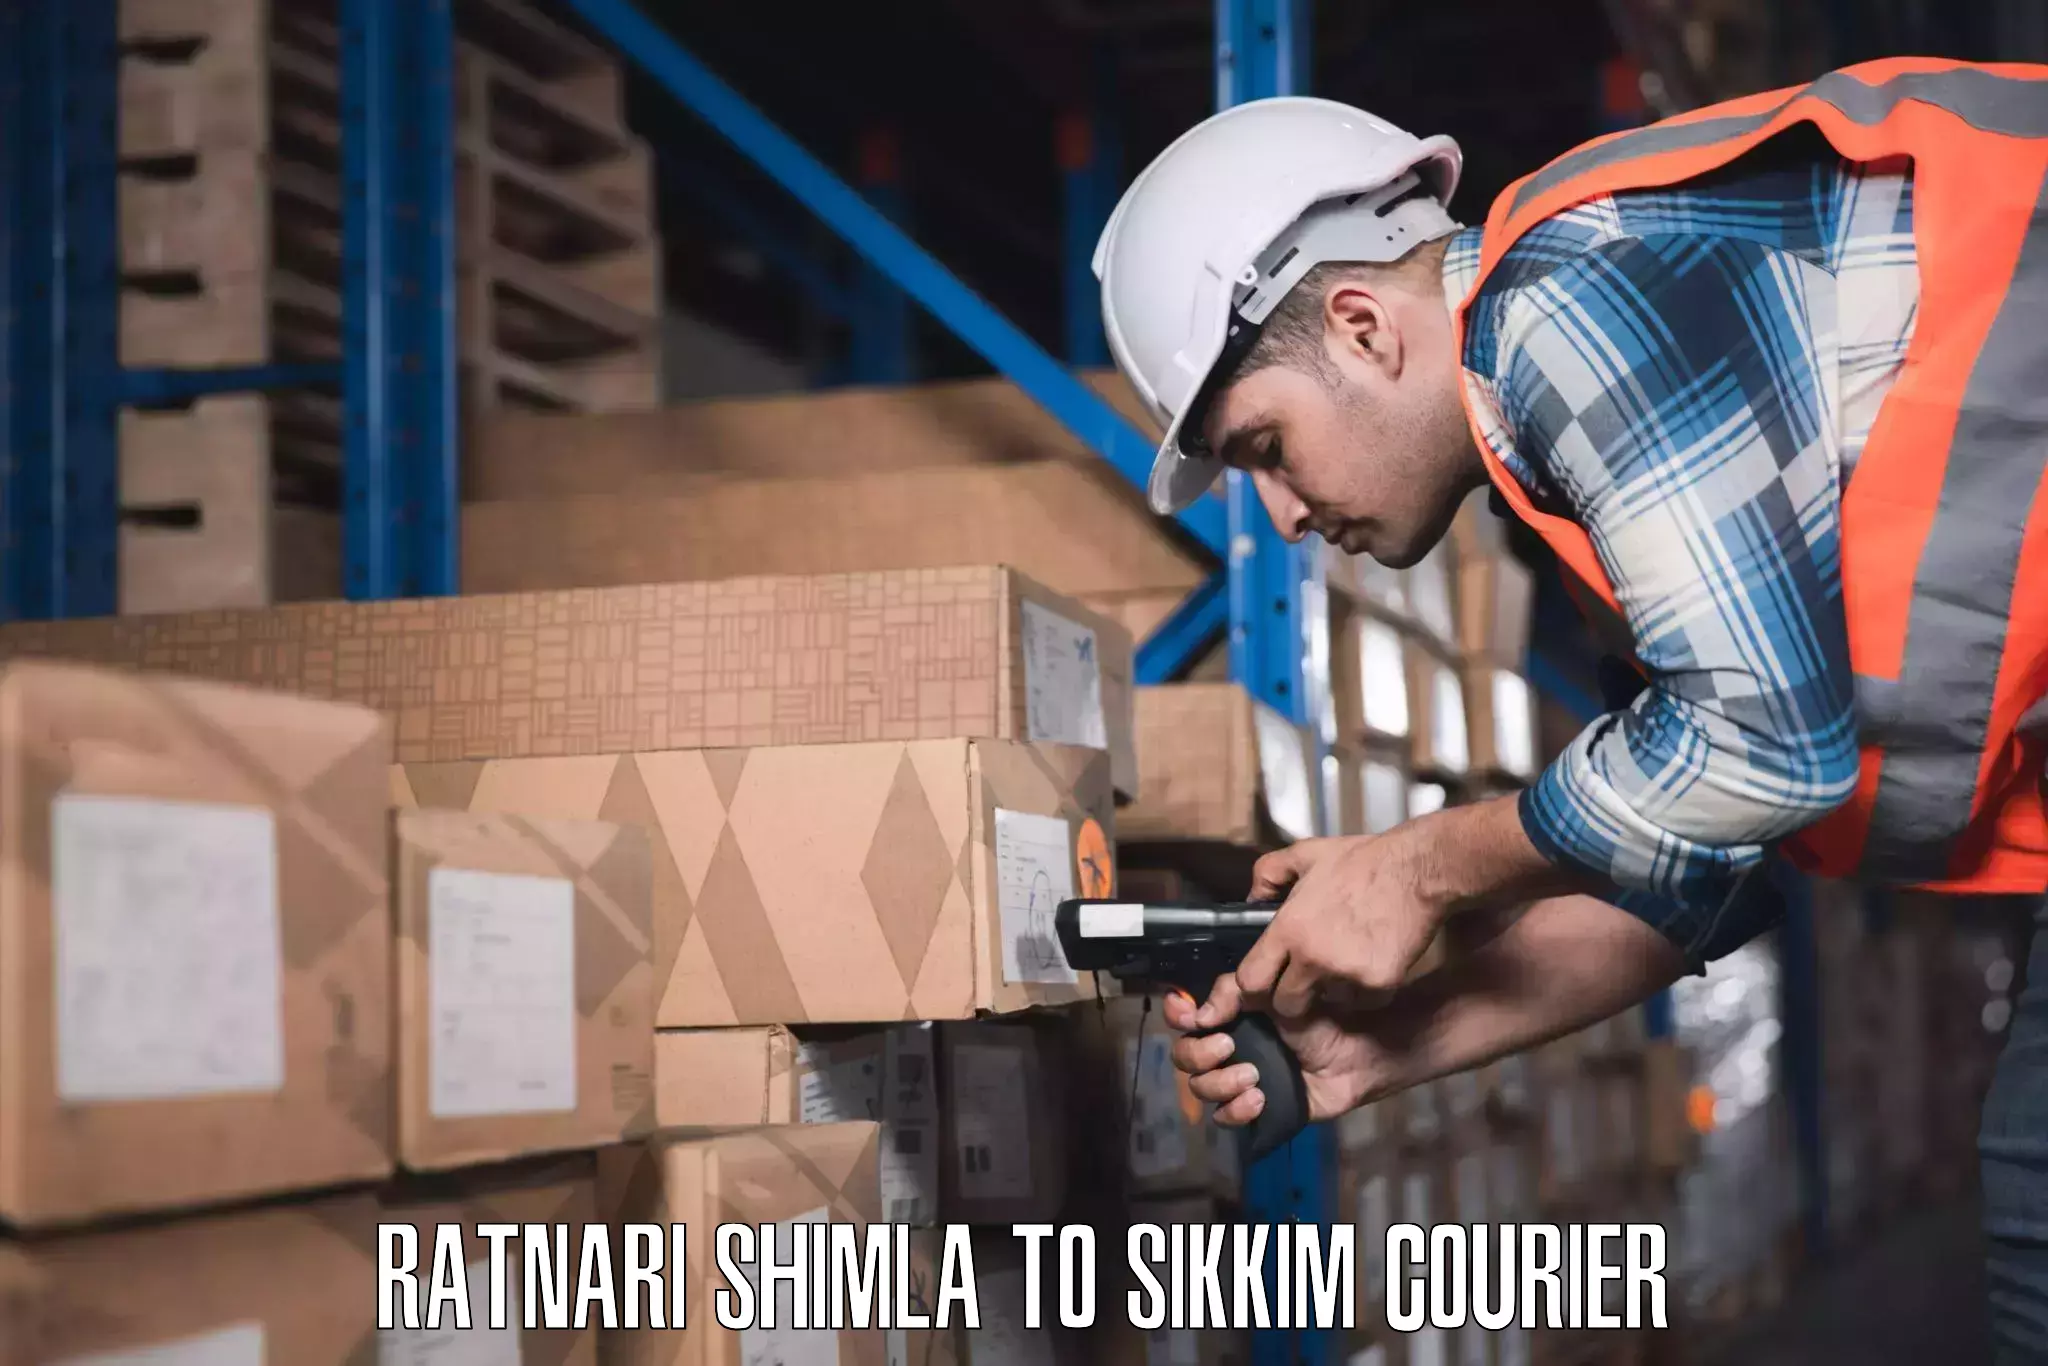 Personal effects shipping Ratnari Shimla to South Sikkim